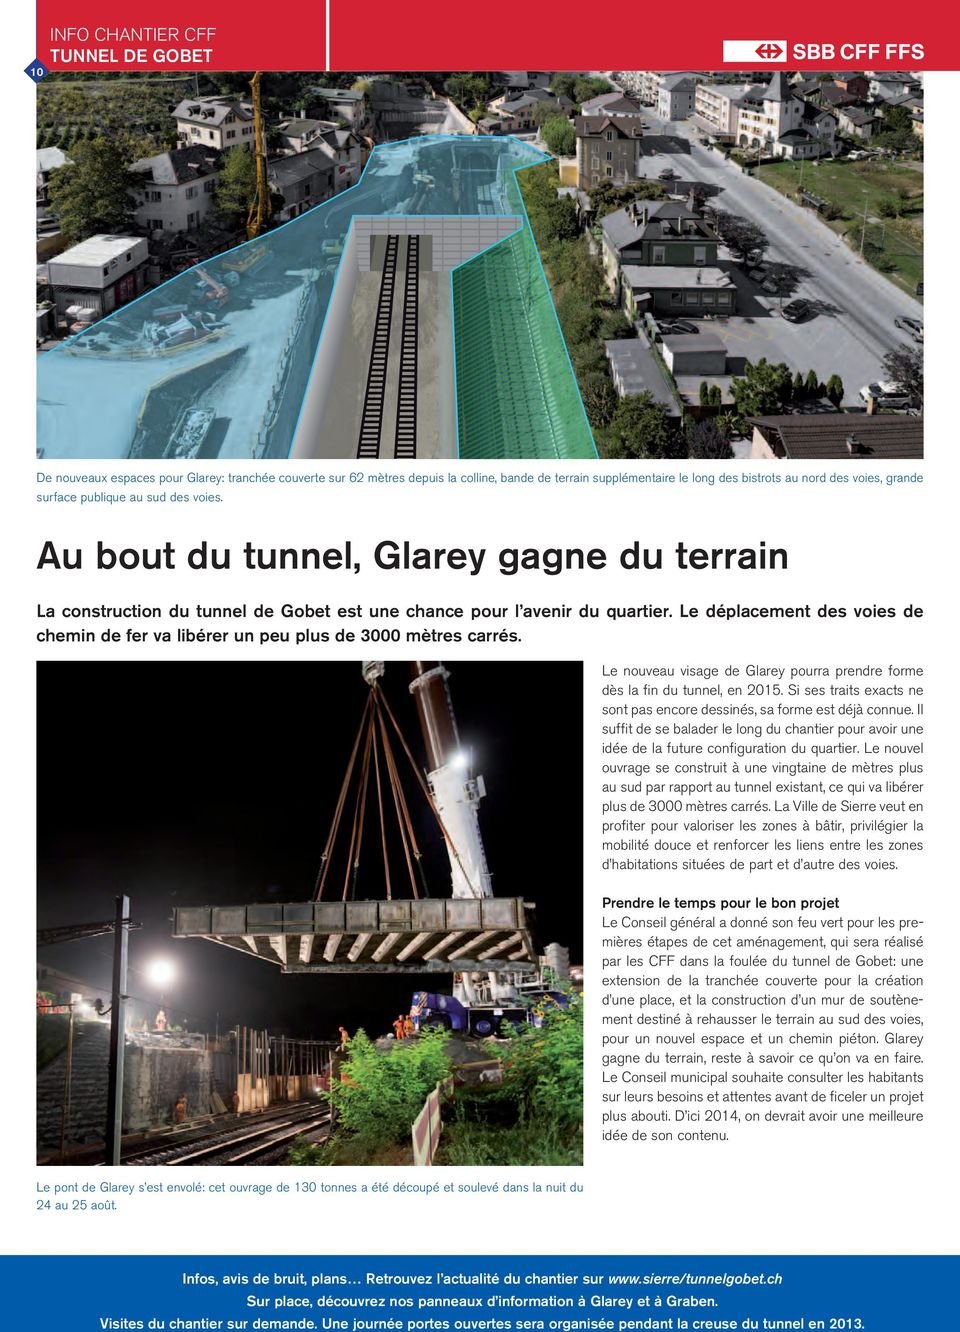 Le déplacement des voies de chemin de fer va libérer un peu plus de 3000 mètres carrés. Le nouveau visage de Glarey pourra prendre forme dès la fin du tunnel, en 2015.